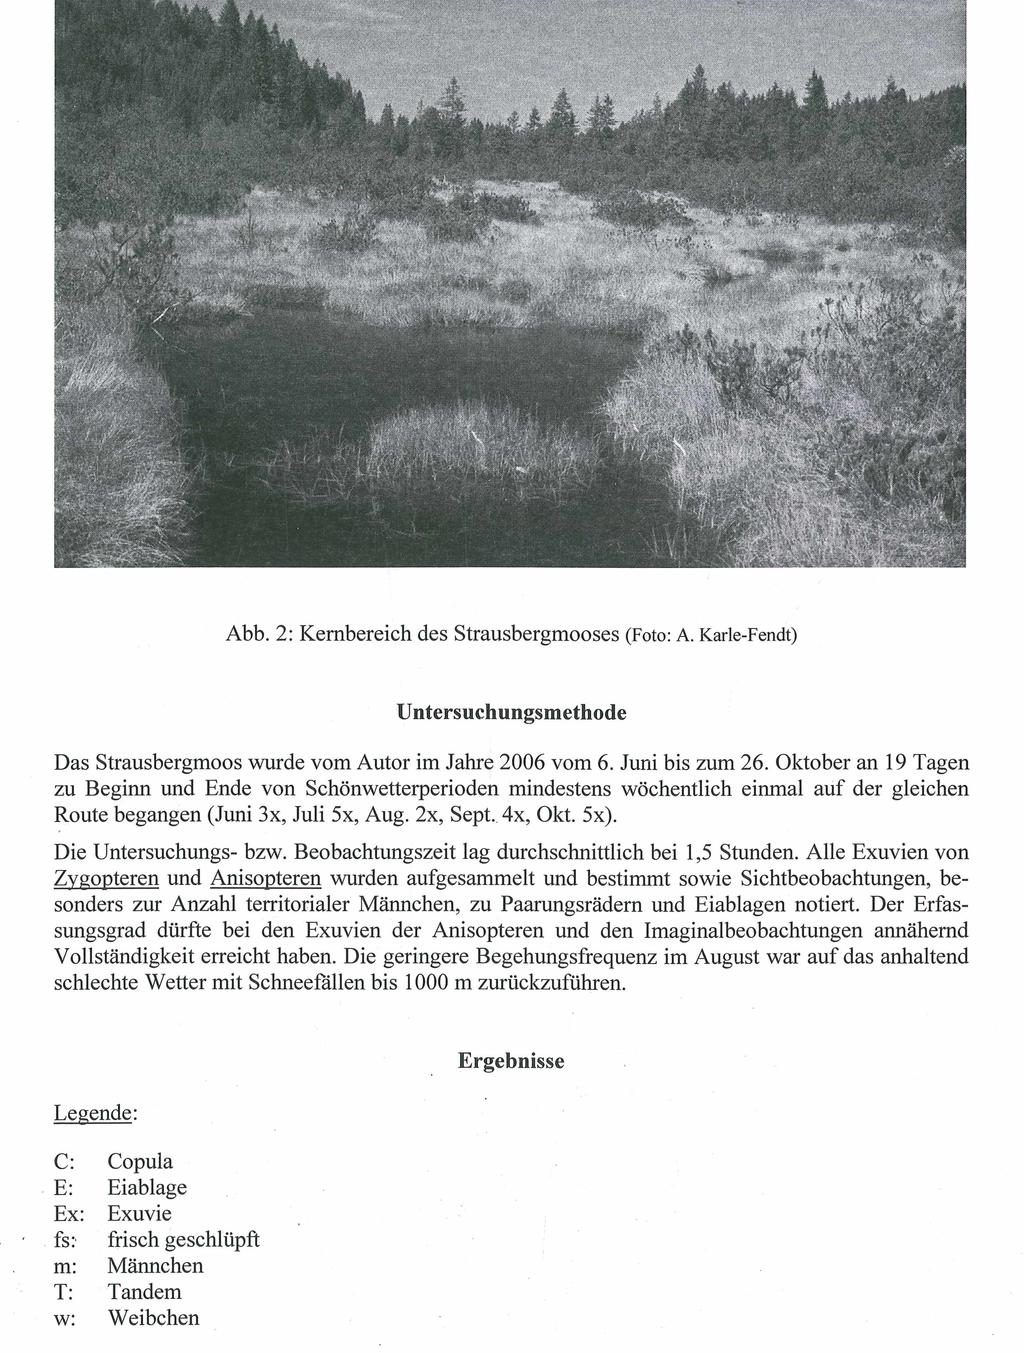 Abb. 2: Kembereich des Strausbergmooses (Foto: A. Karle-Fendt) Untersuchungsmethode Das Strausbergmoos wurde vom Autor im Jahre 2006 vom 6. Juni bis zum 26.